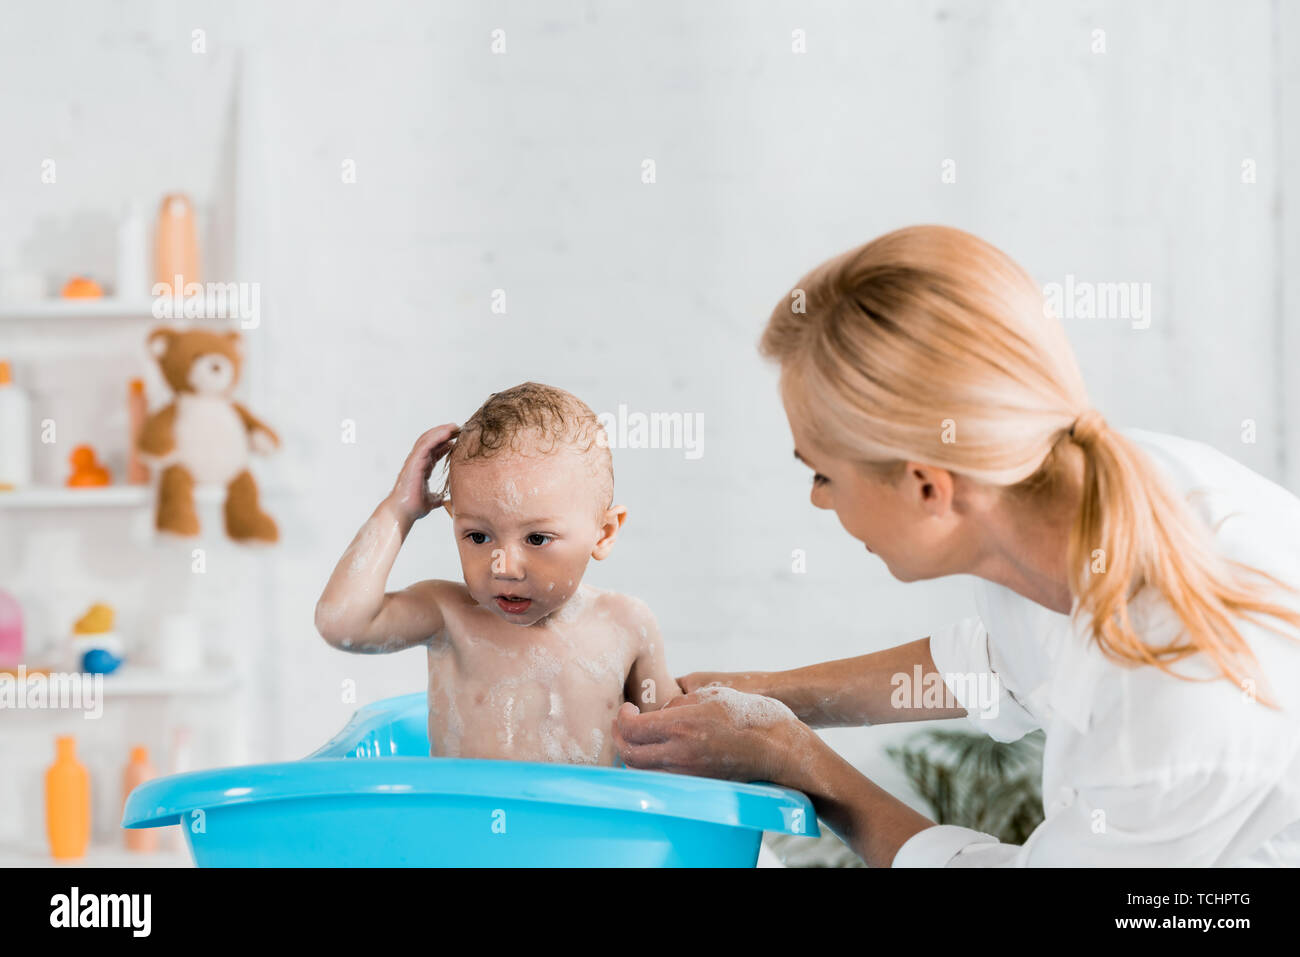 Помыла сына в ванной. Мама с сыном играют в ванной. Семейная эмоция радость в ванной комнате. Мама погружает сына в ванну. Мама в ванной 18